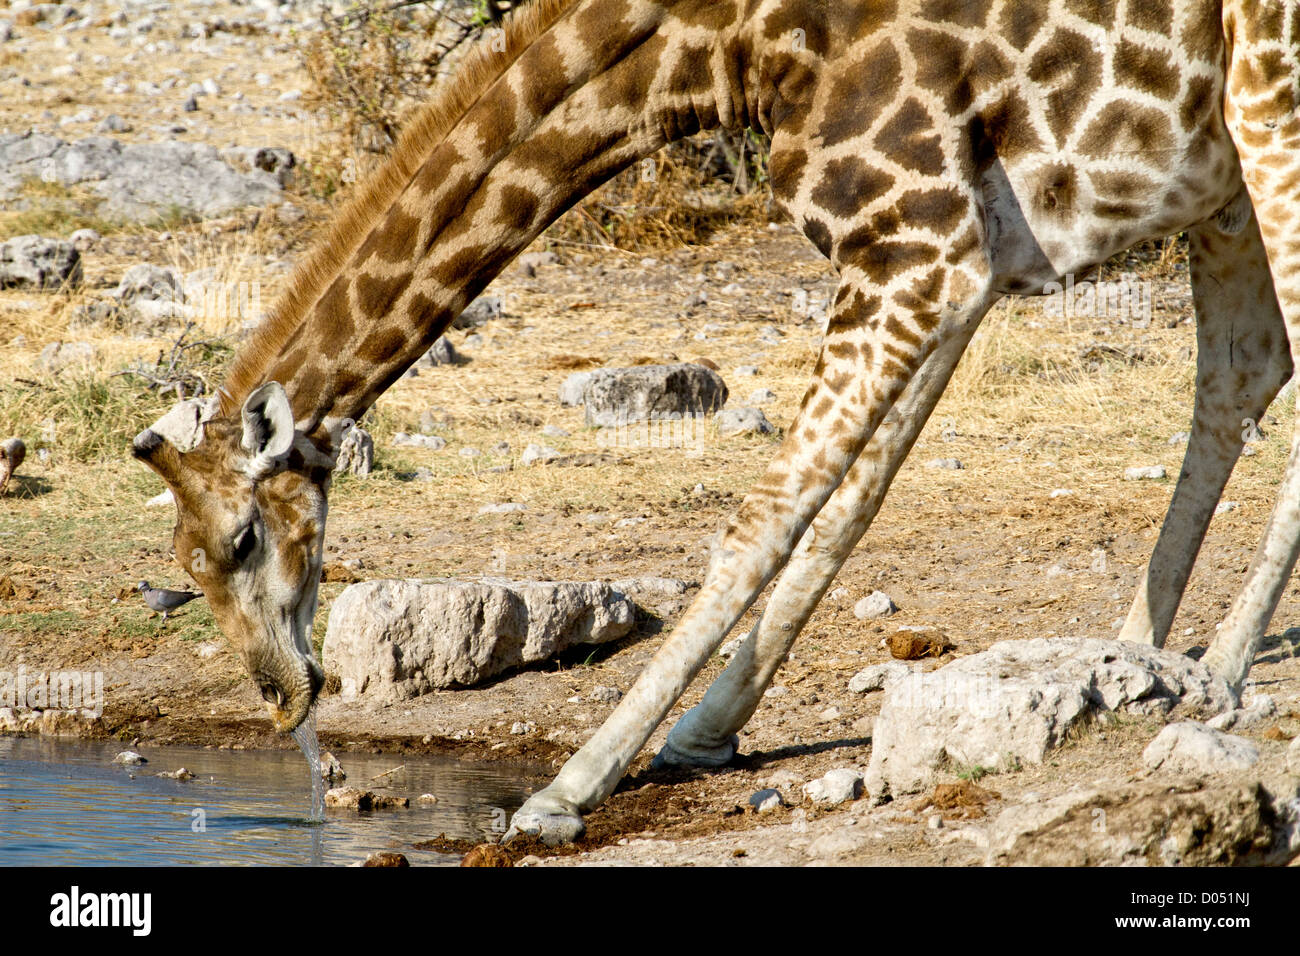 Girafe se trouve au point d'eau et répond à sa soif Banque D'Images